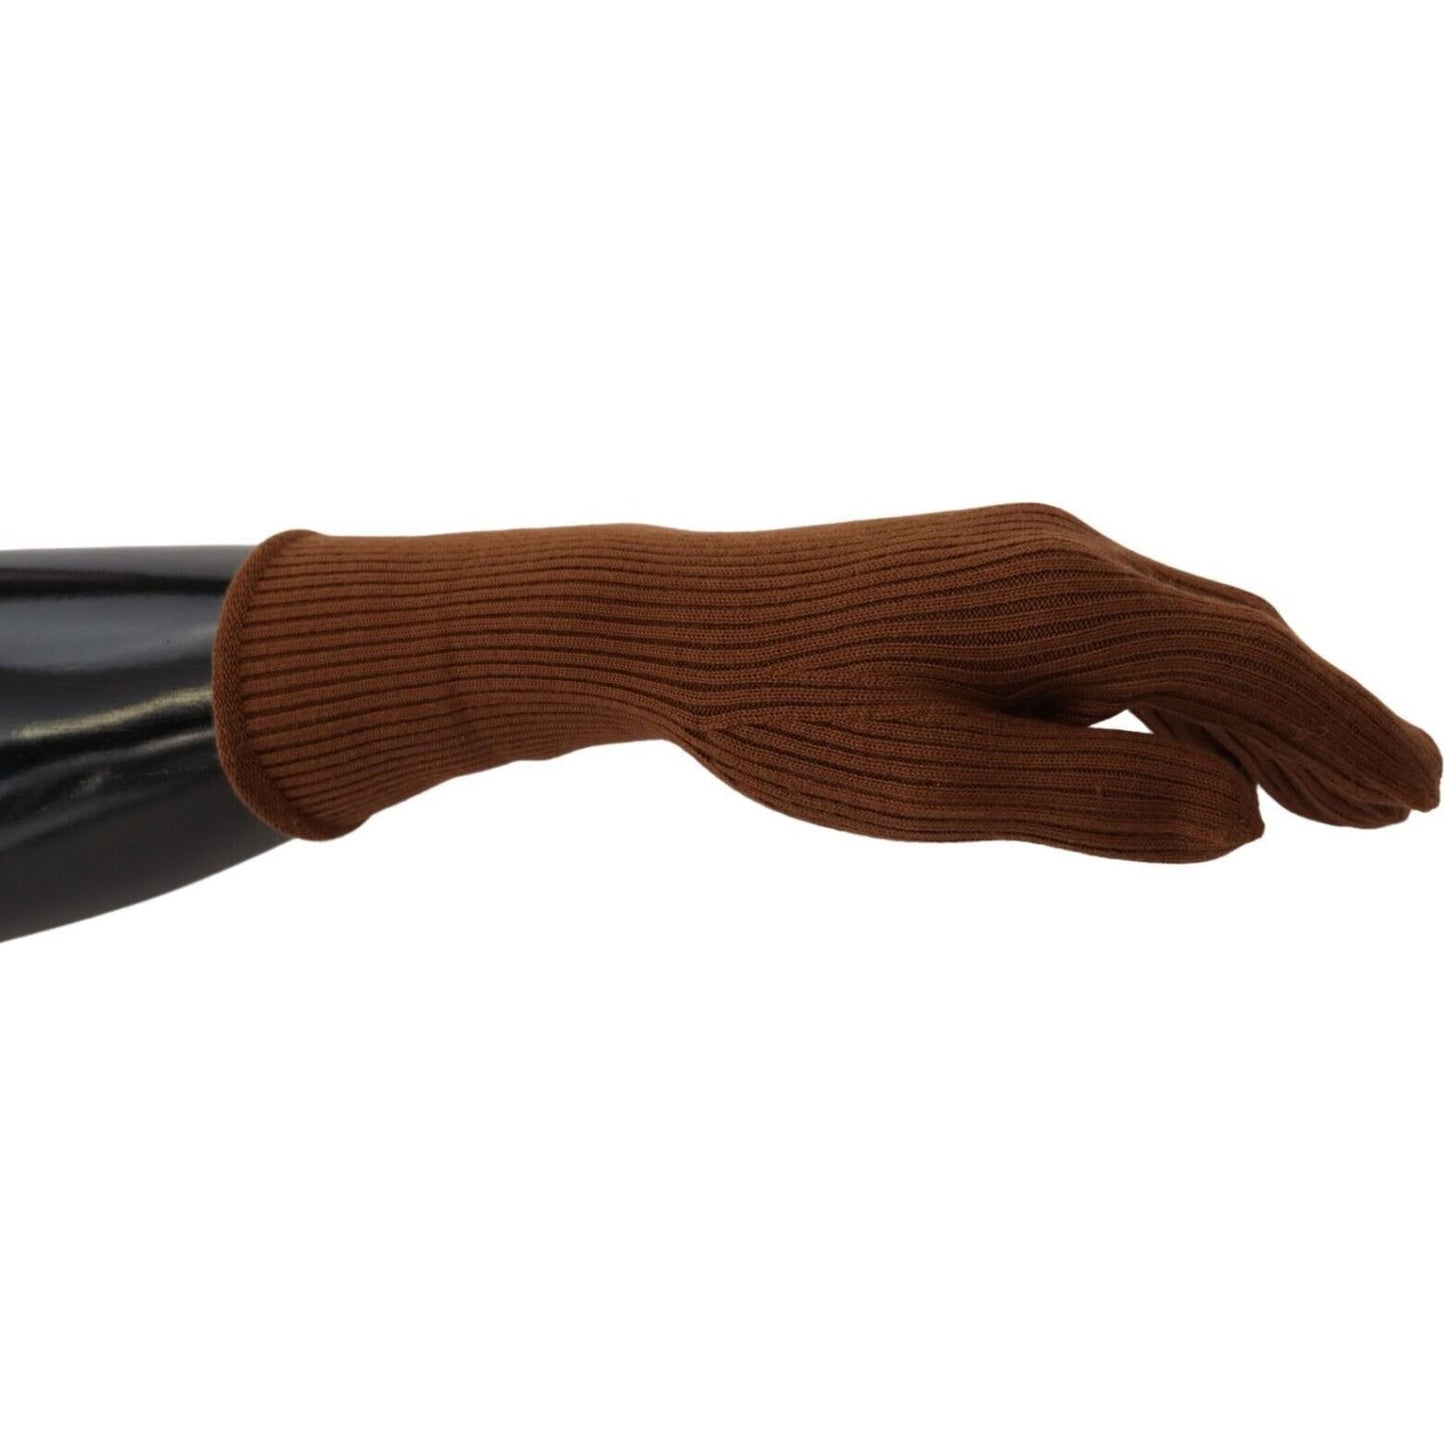 Dolce & Gabbana Elegant Brown Cashmere Winter Gloves brown-cashmere-knitted-hands-mitten-mens-gloves